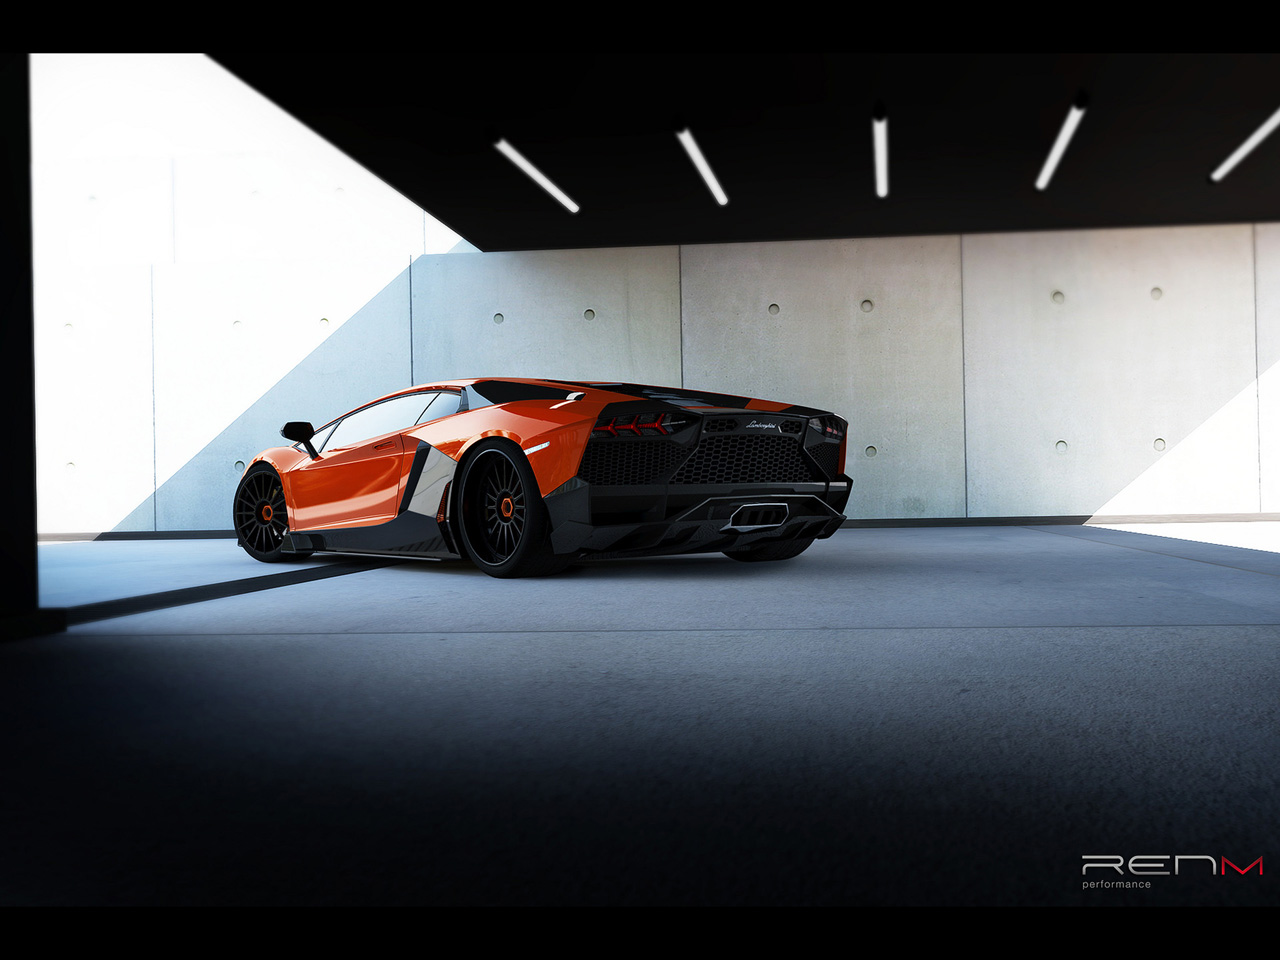 2012 RENM Lamborghini Aventador Limited Corsa